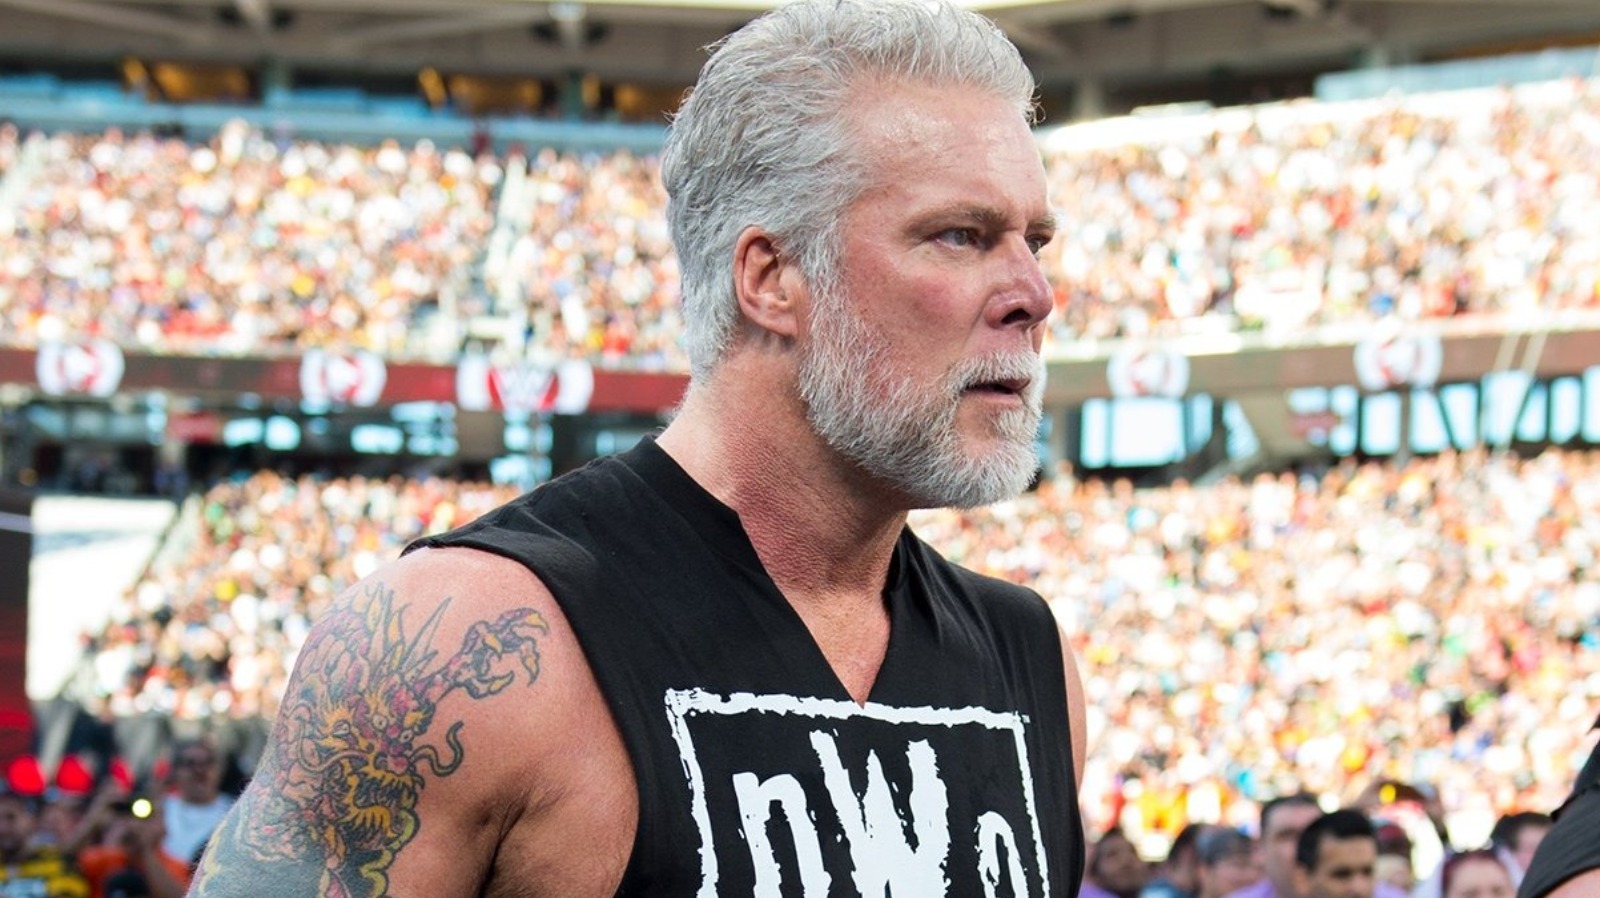 El ex campeón de la WCW dice que "no hay una era de actitud" sin él